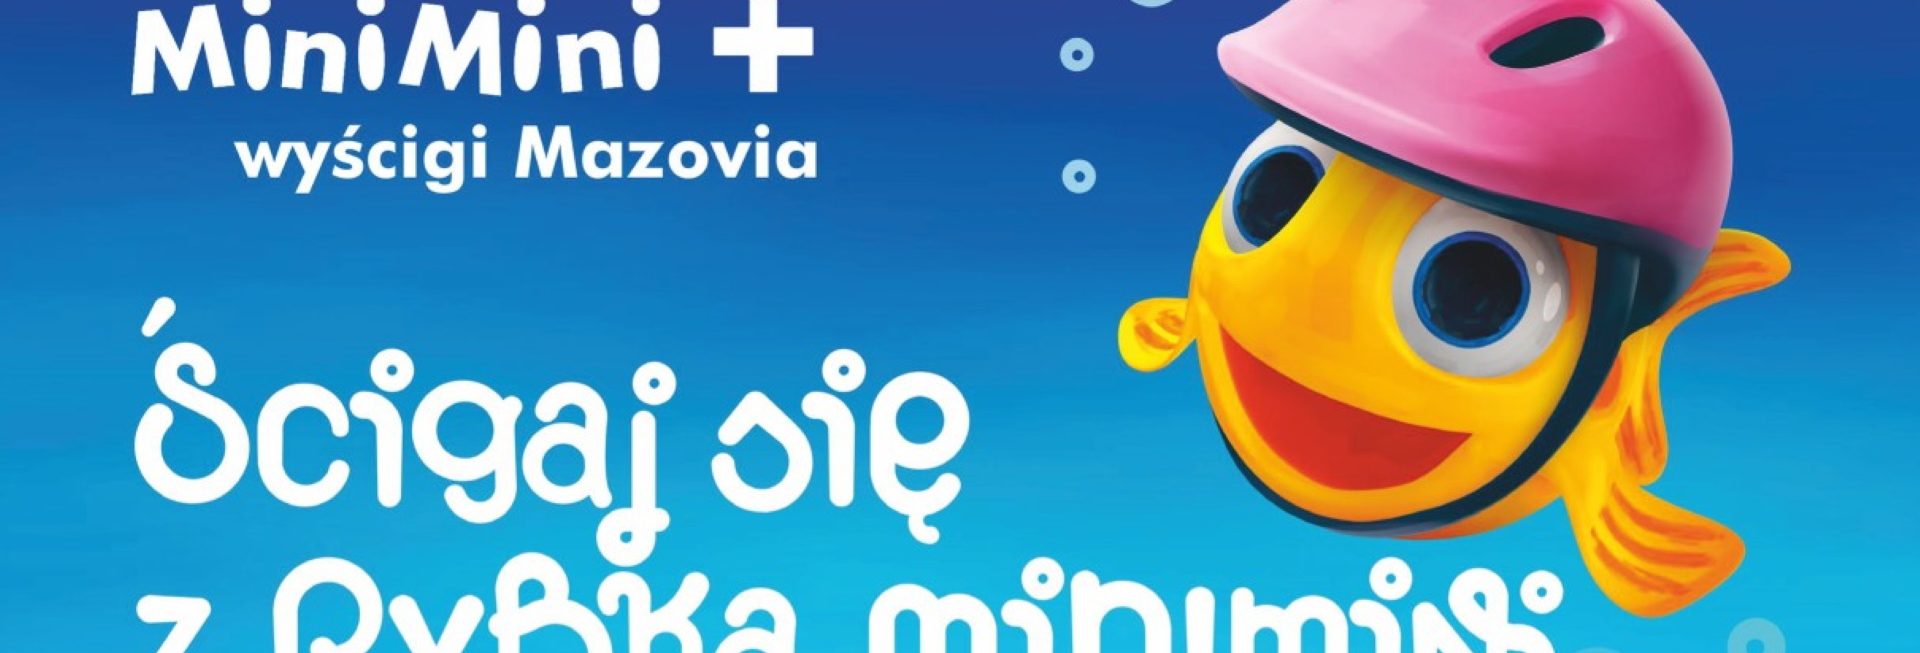 Plakat zapraszający do Olsztyna na Mini Mini wyścig Mazovia "Ścigaj się z rybką minimini" Olsztyn 2022.